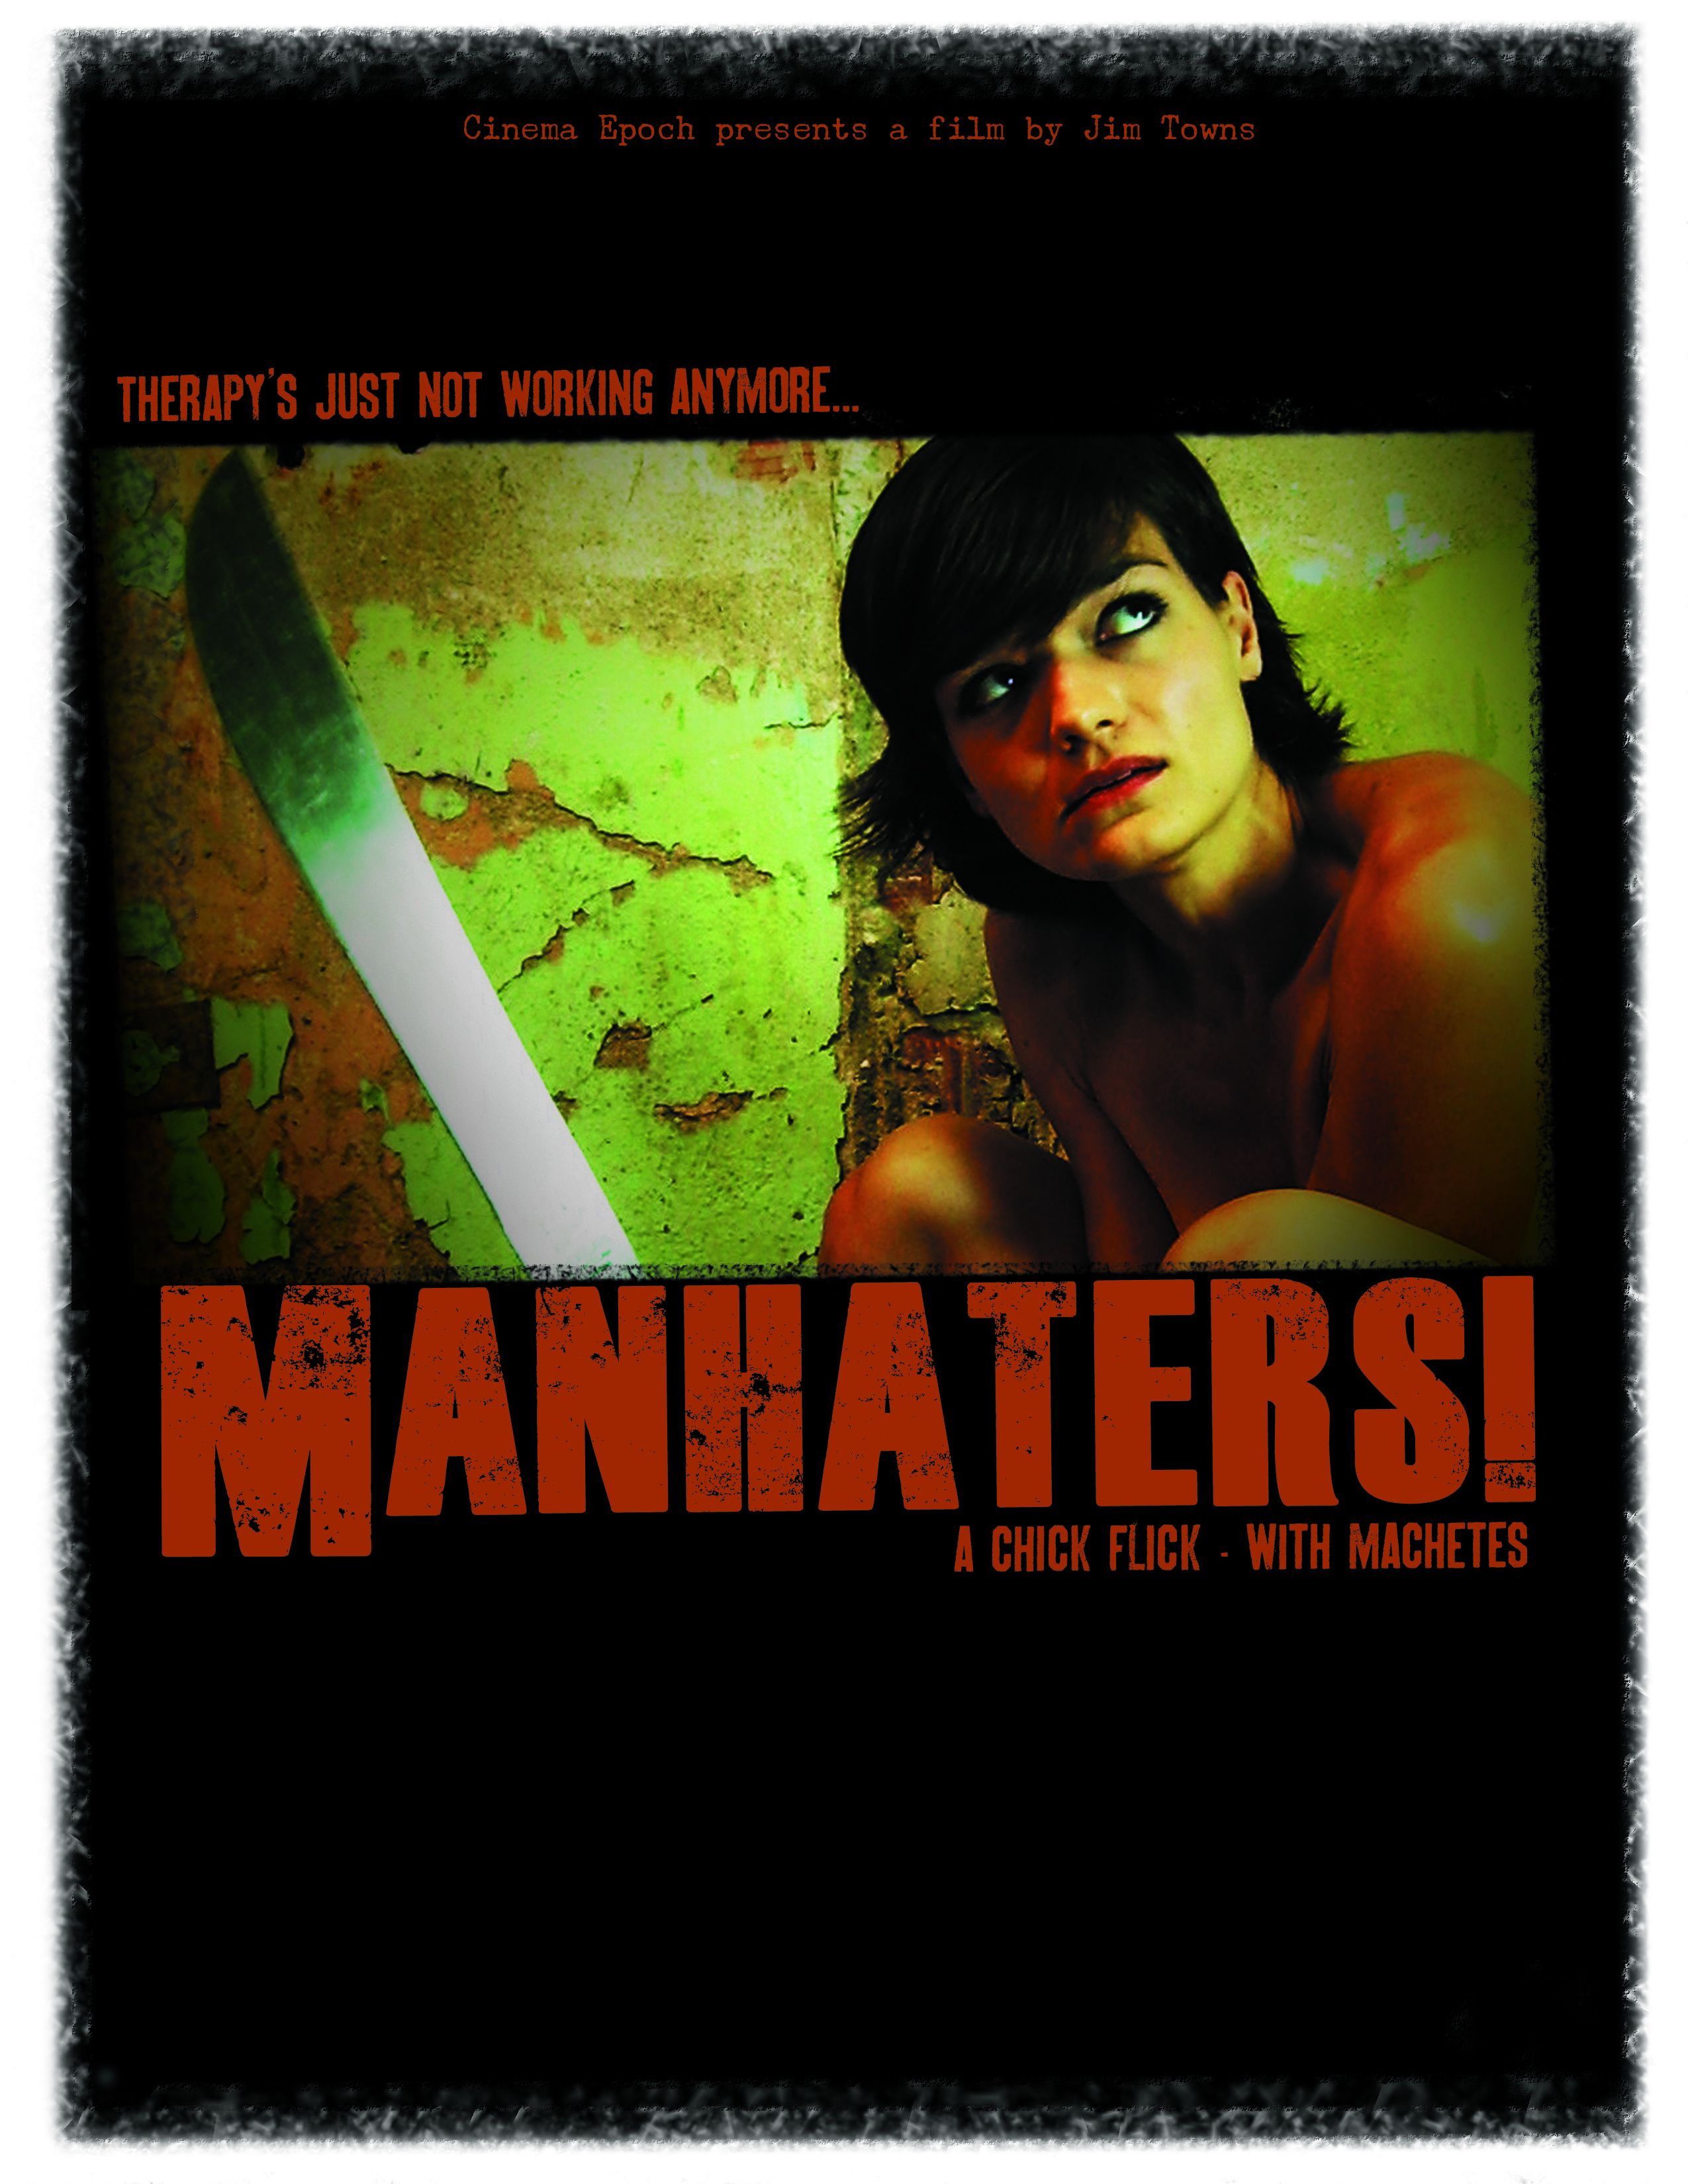 Manhaters! starring Jamie Bernadette, Sadie Katz, Stef Dawson, Elise Jackson & River Gareth. Written & Directed by Jim Towns